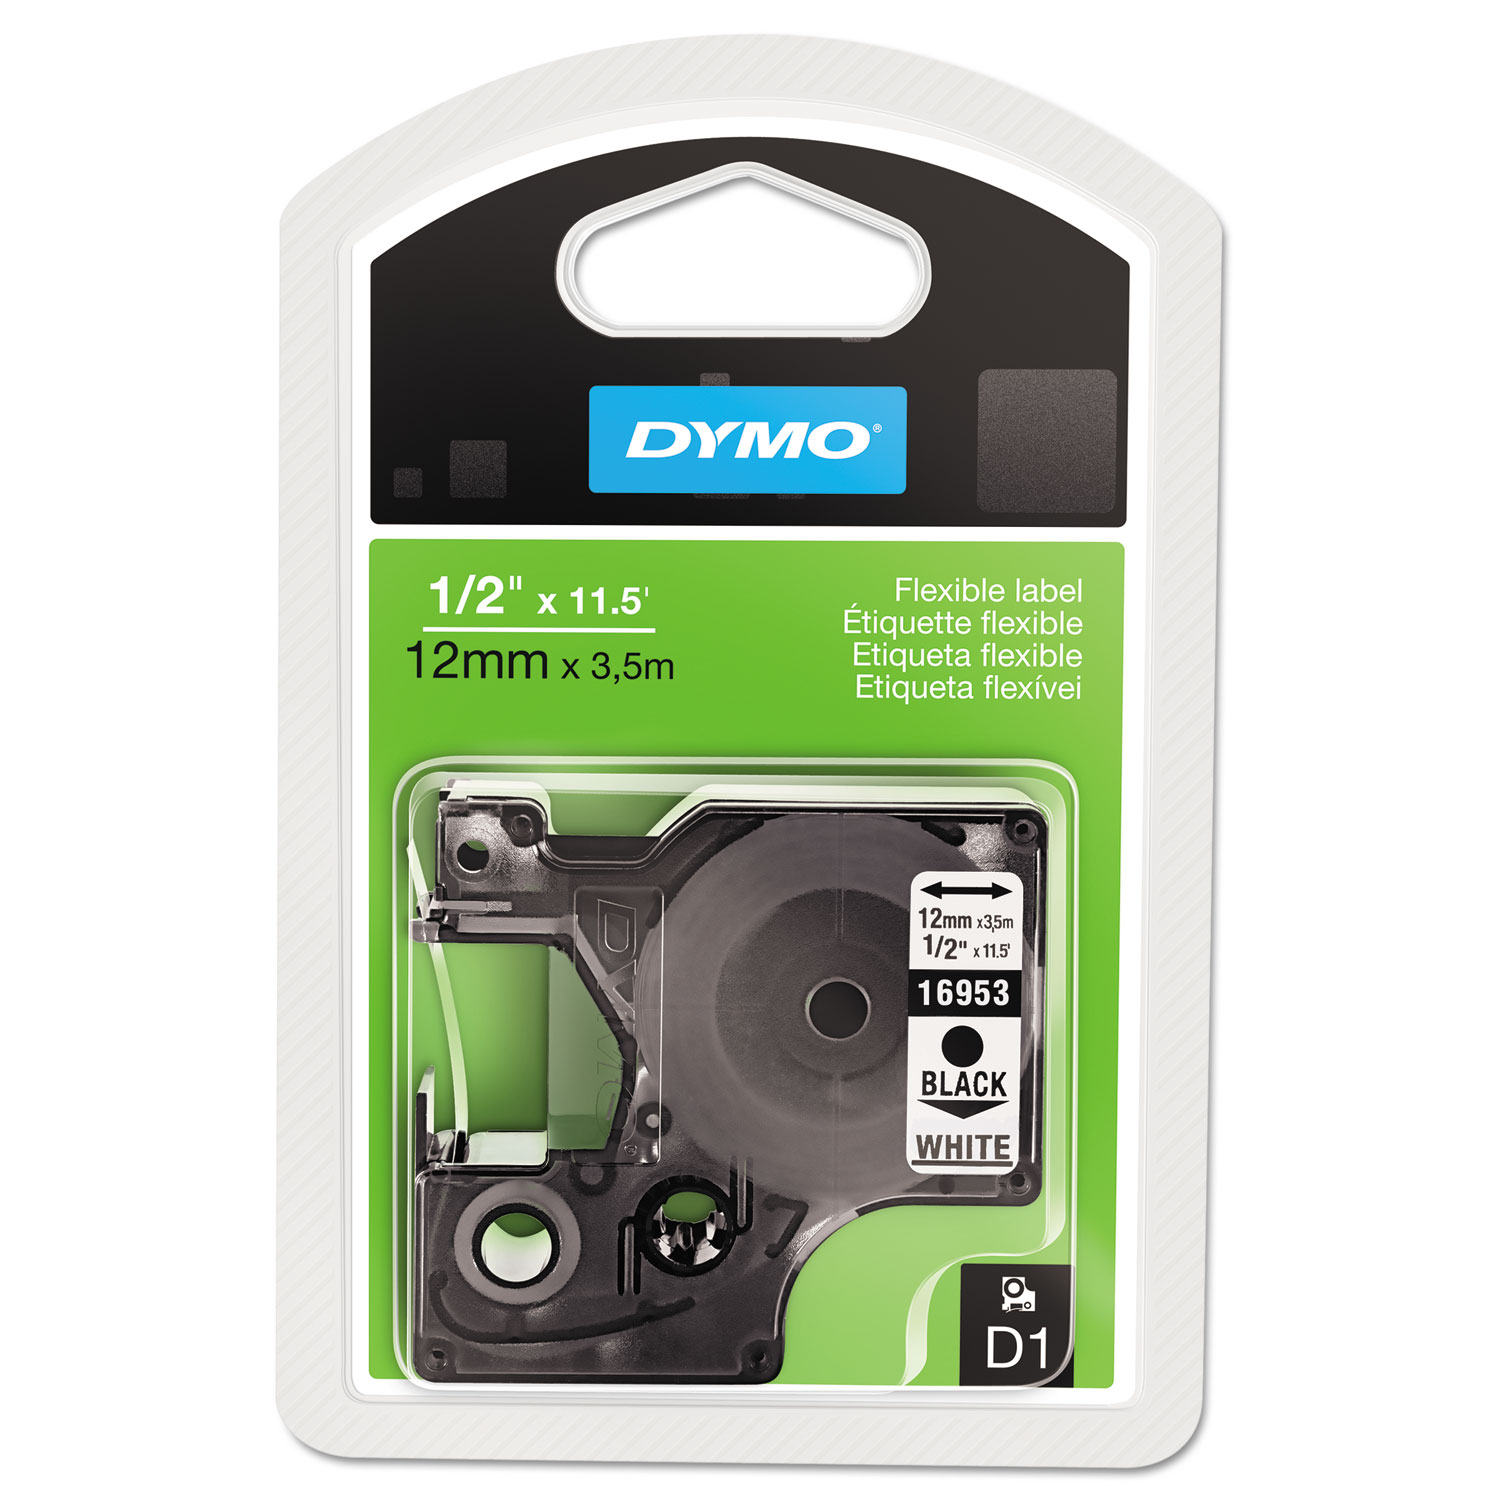  DYMO 16953 D1 Flexible Nylon Label Maker Tape, 0.5 x 11.5 ft, Black on White (DYM16953) 